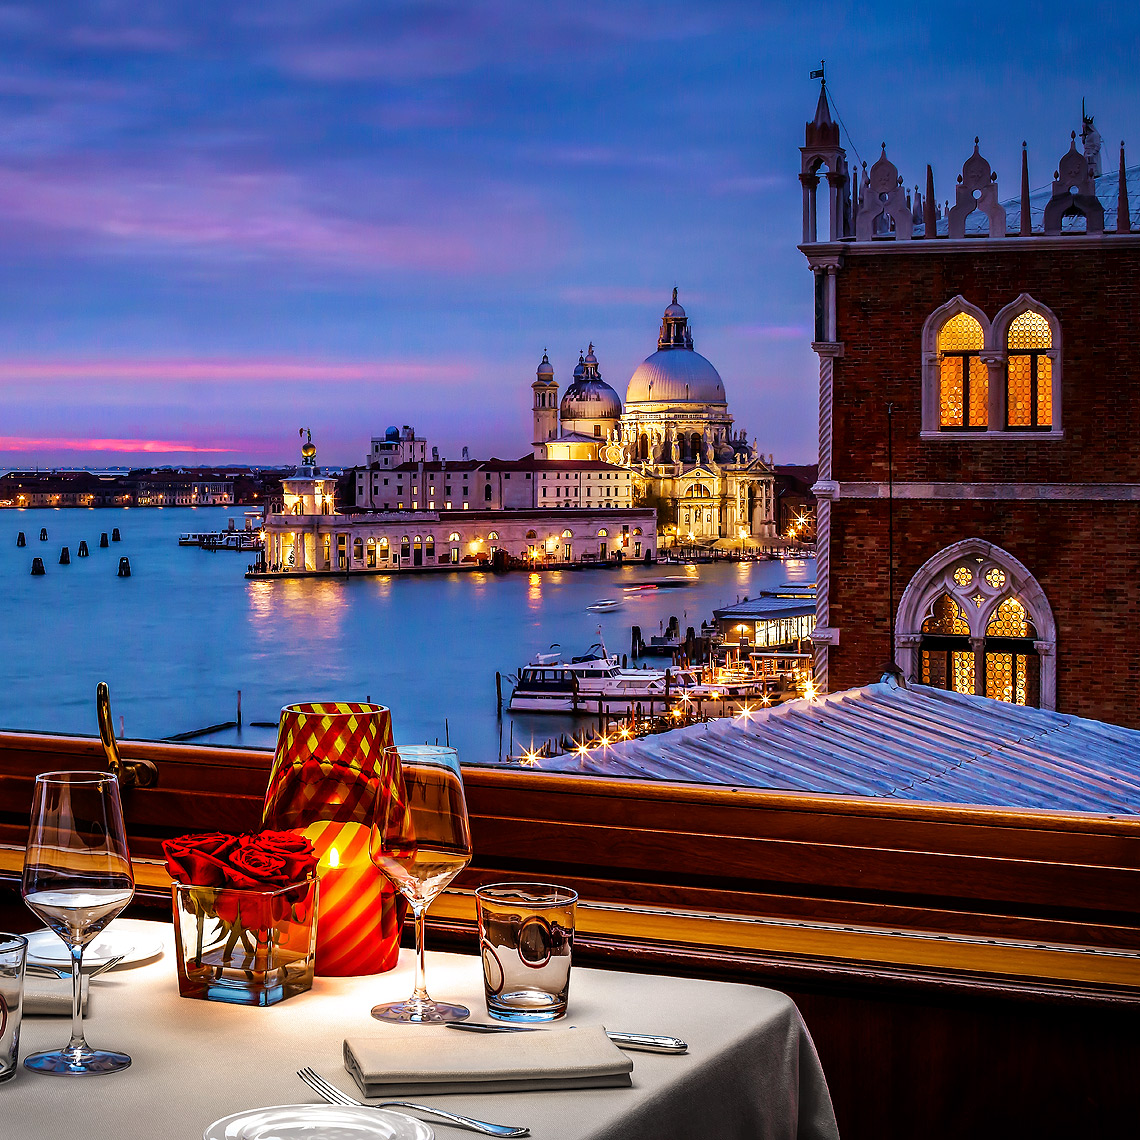 Danieli_Hotel_Terrazza_Restaurant_Venice_Santa_Maria_Della_Salute_View